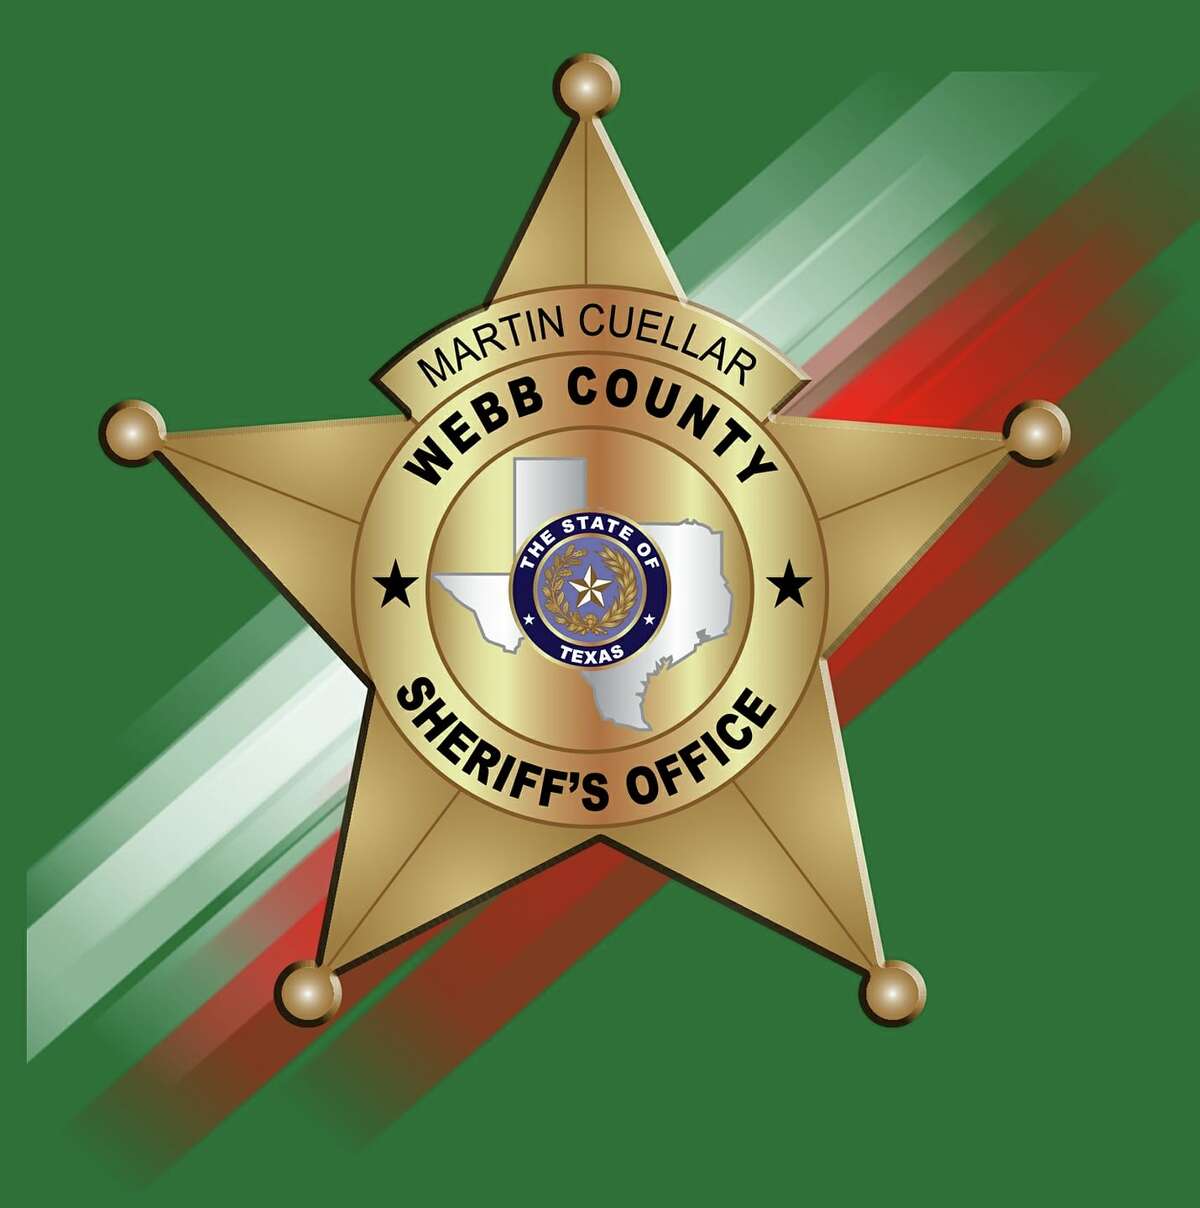 Webb County Sheriff's Office.